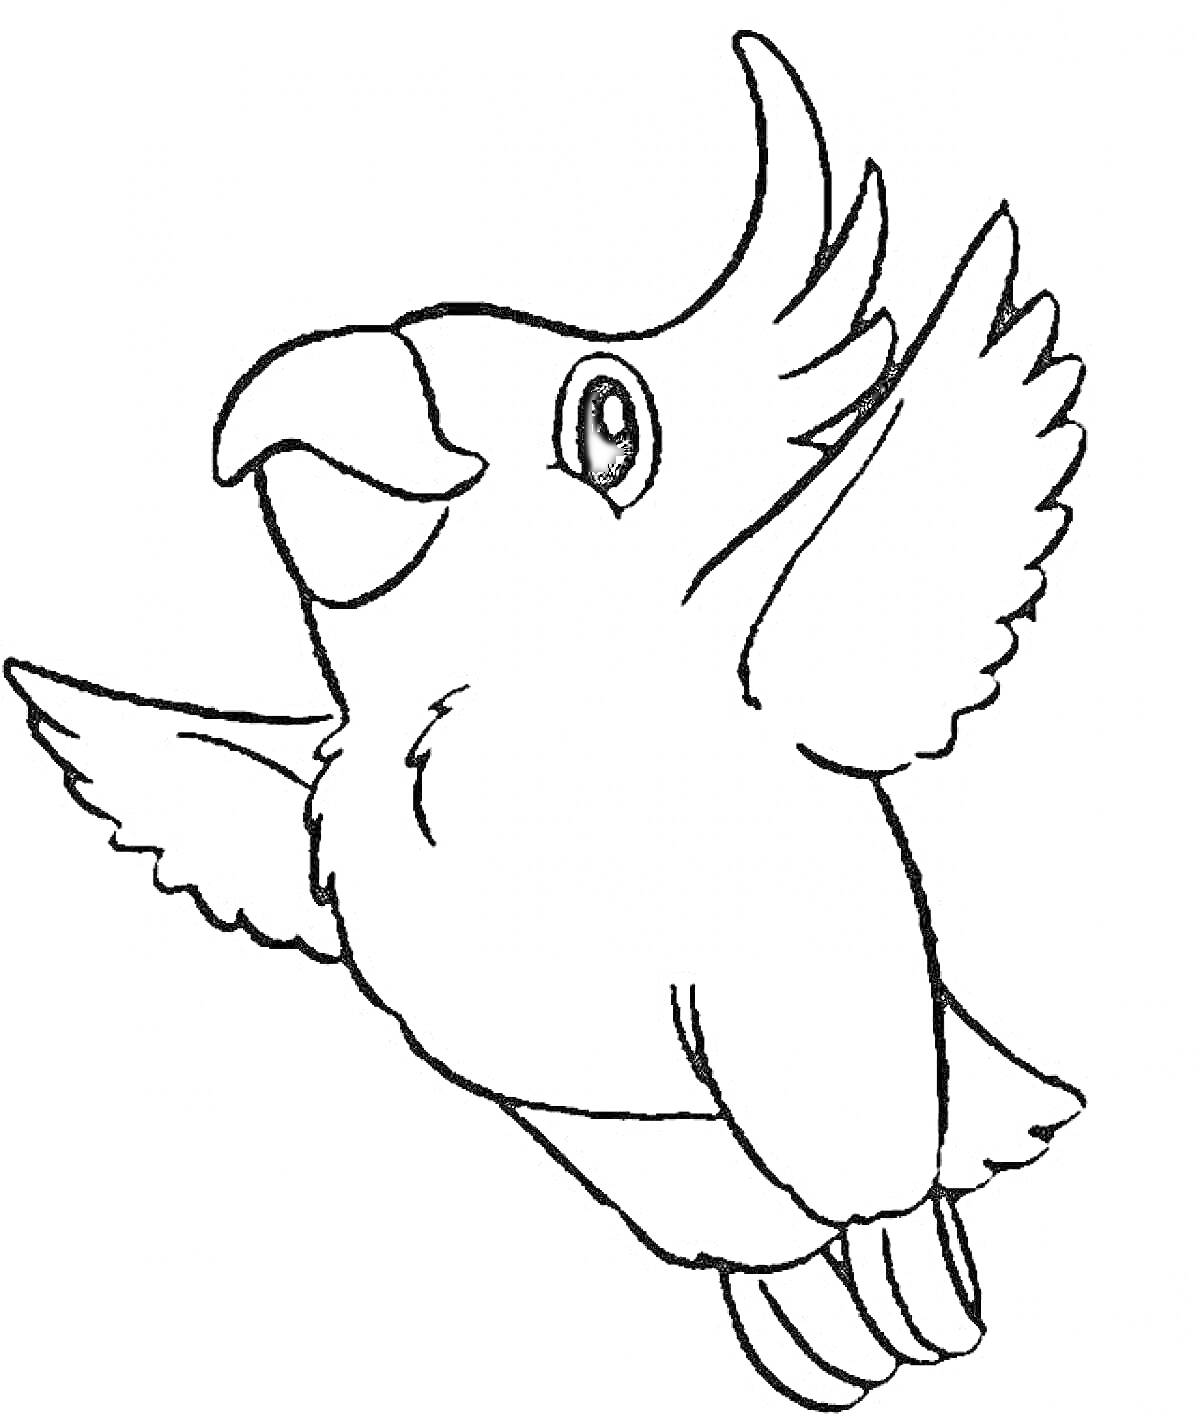 Летящий попугай с расправленными крыльями и приподнятым хохолком